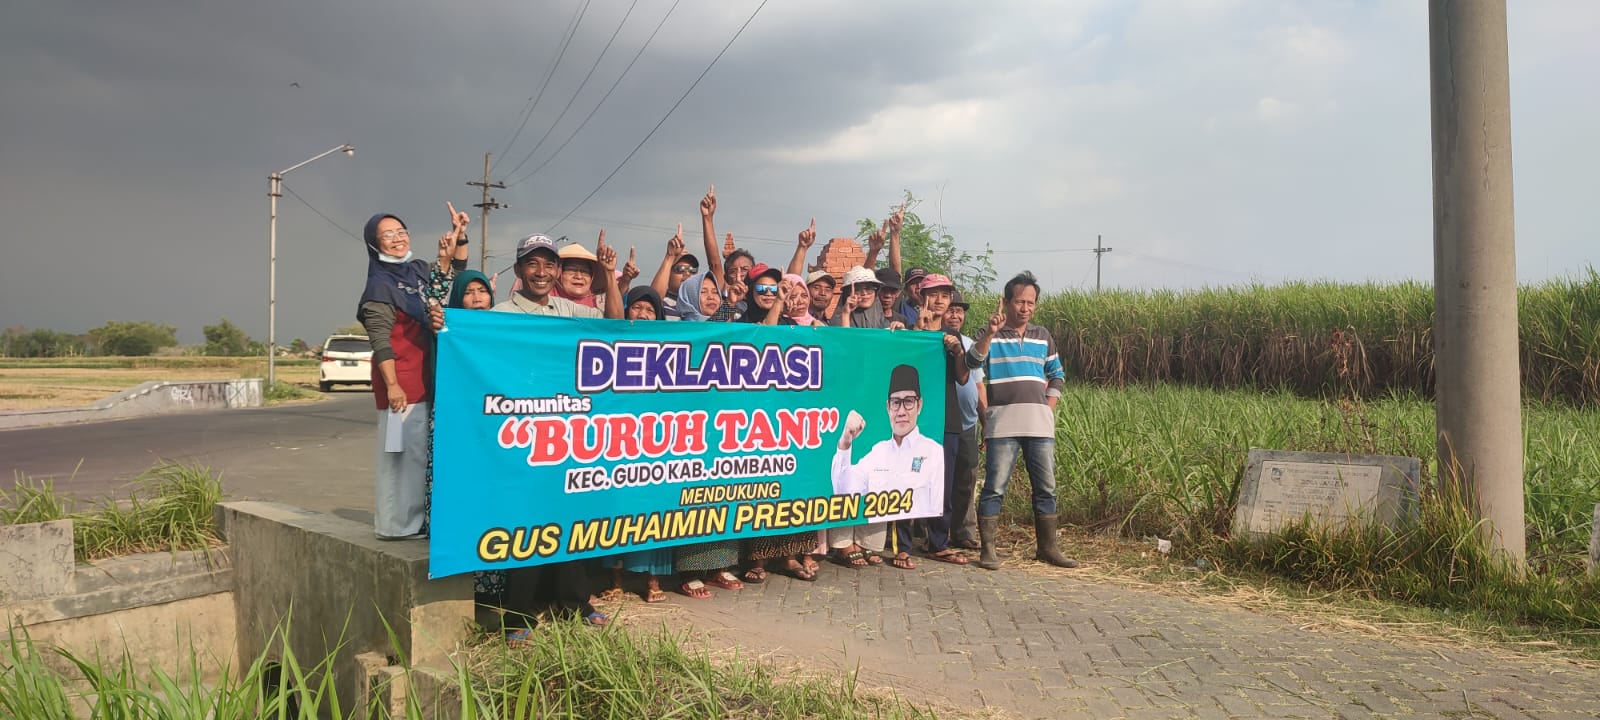 Deklarasi Gus Muhaimin Presiden oleh Komunitas buruh Tani Jombang di Gudo.